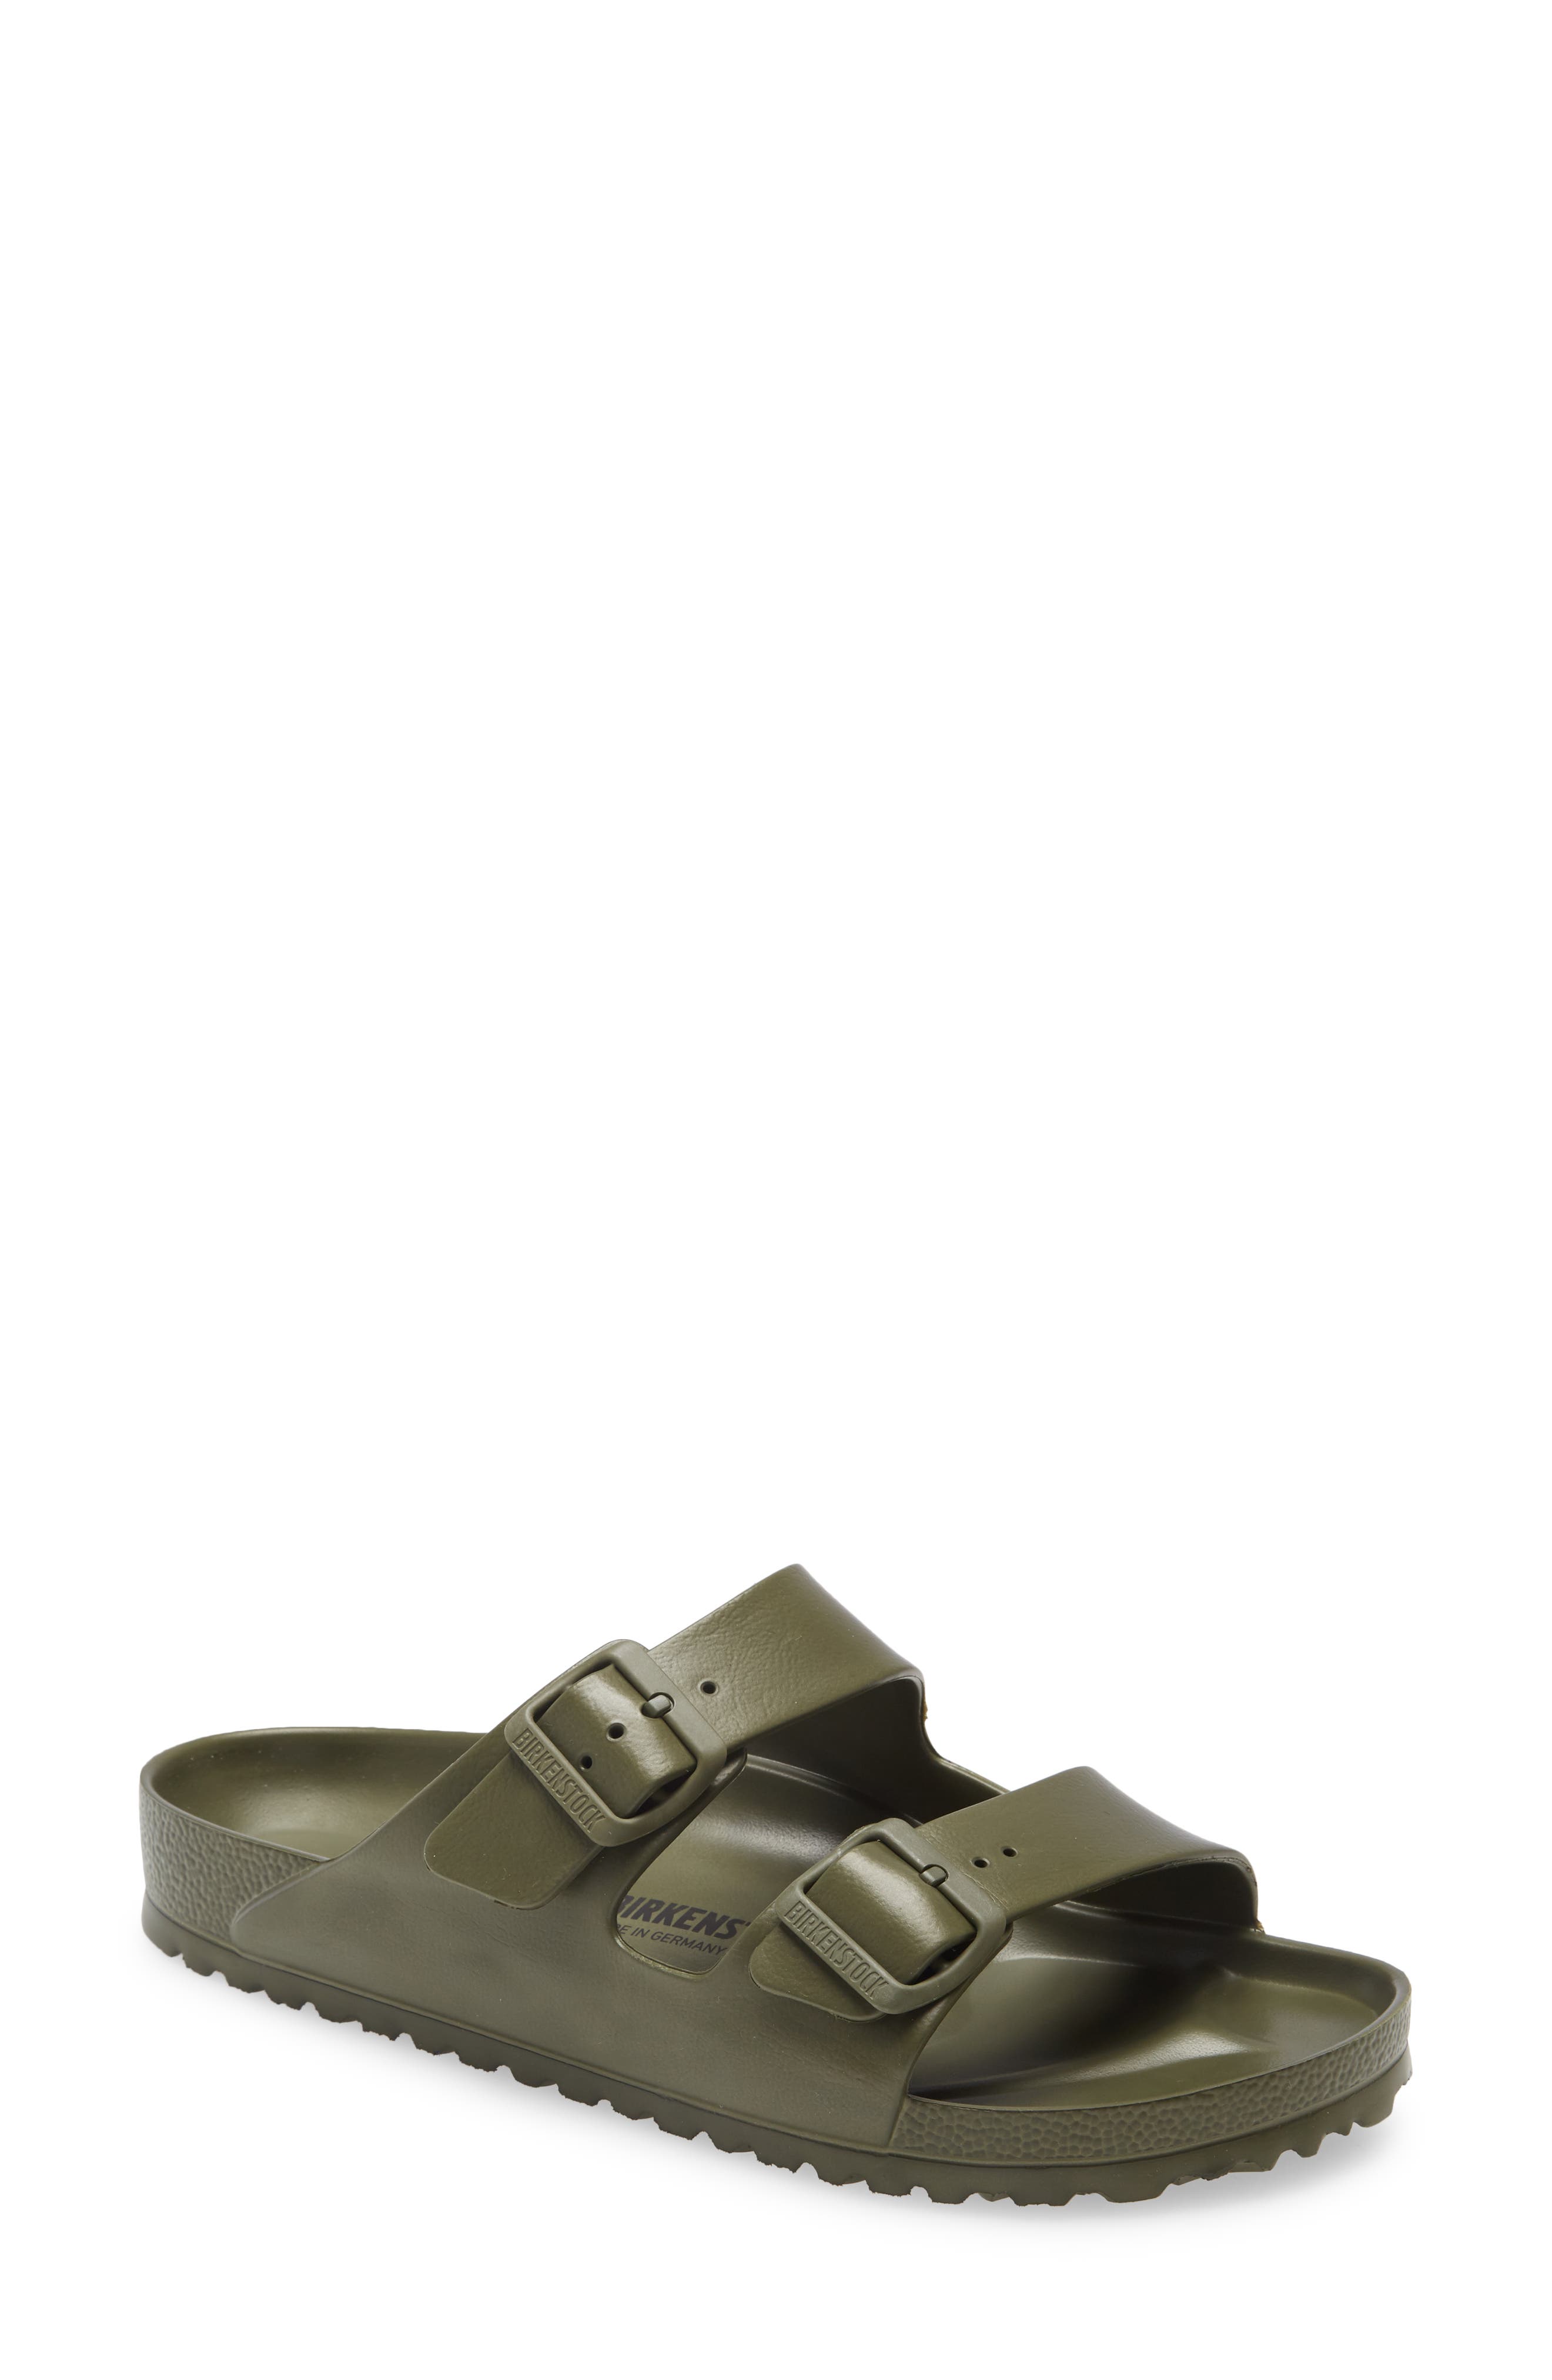 birkenstock arizona slide sandals